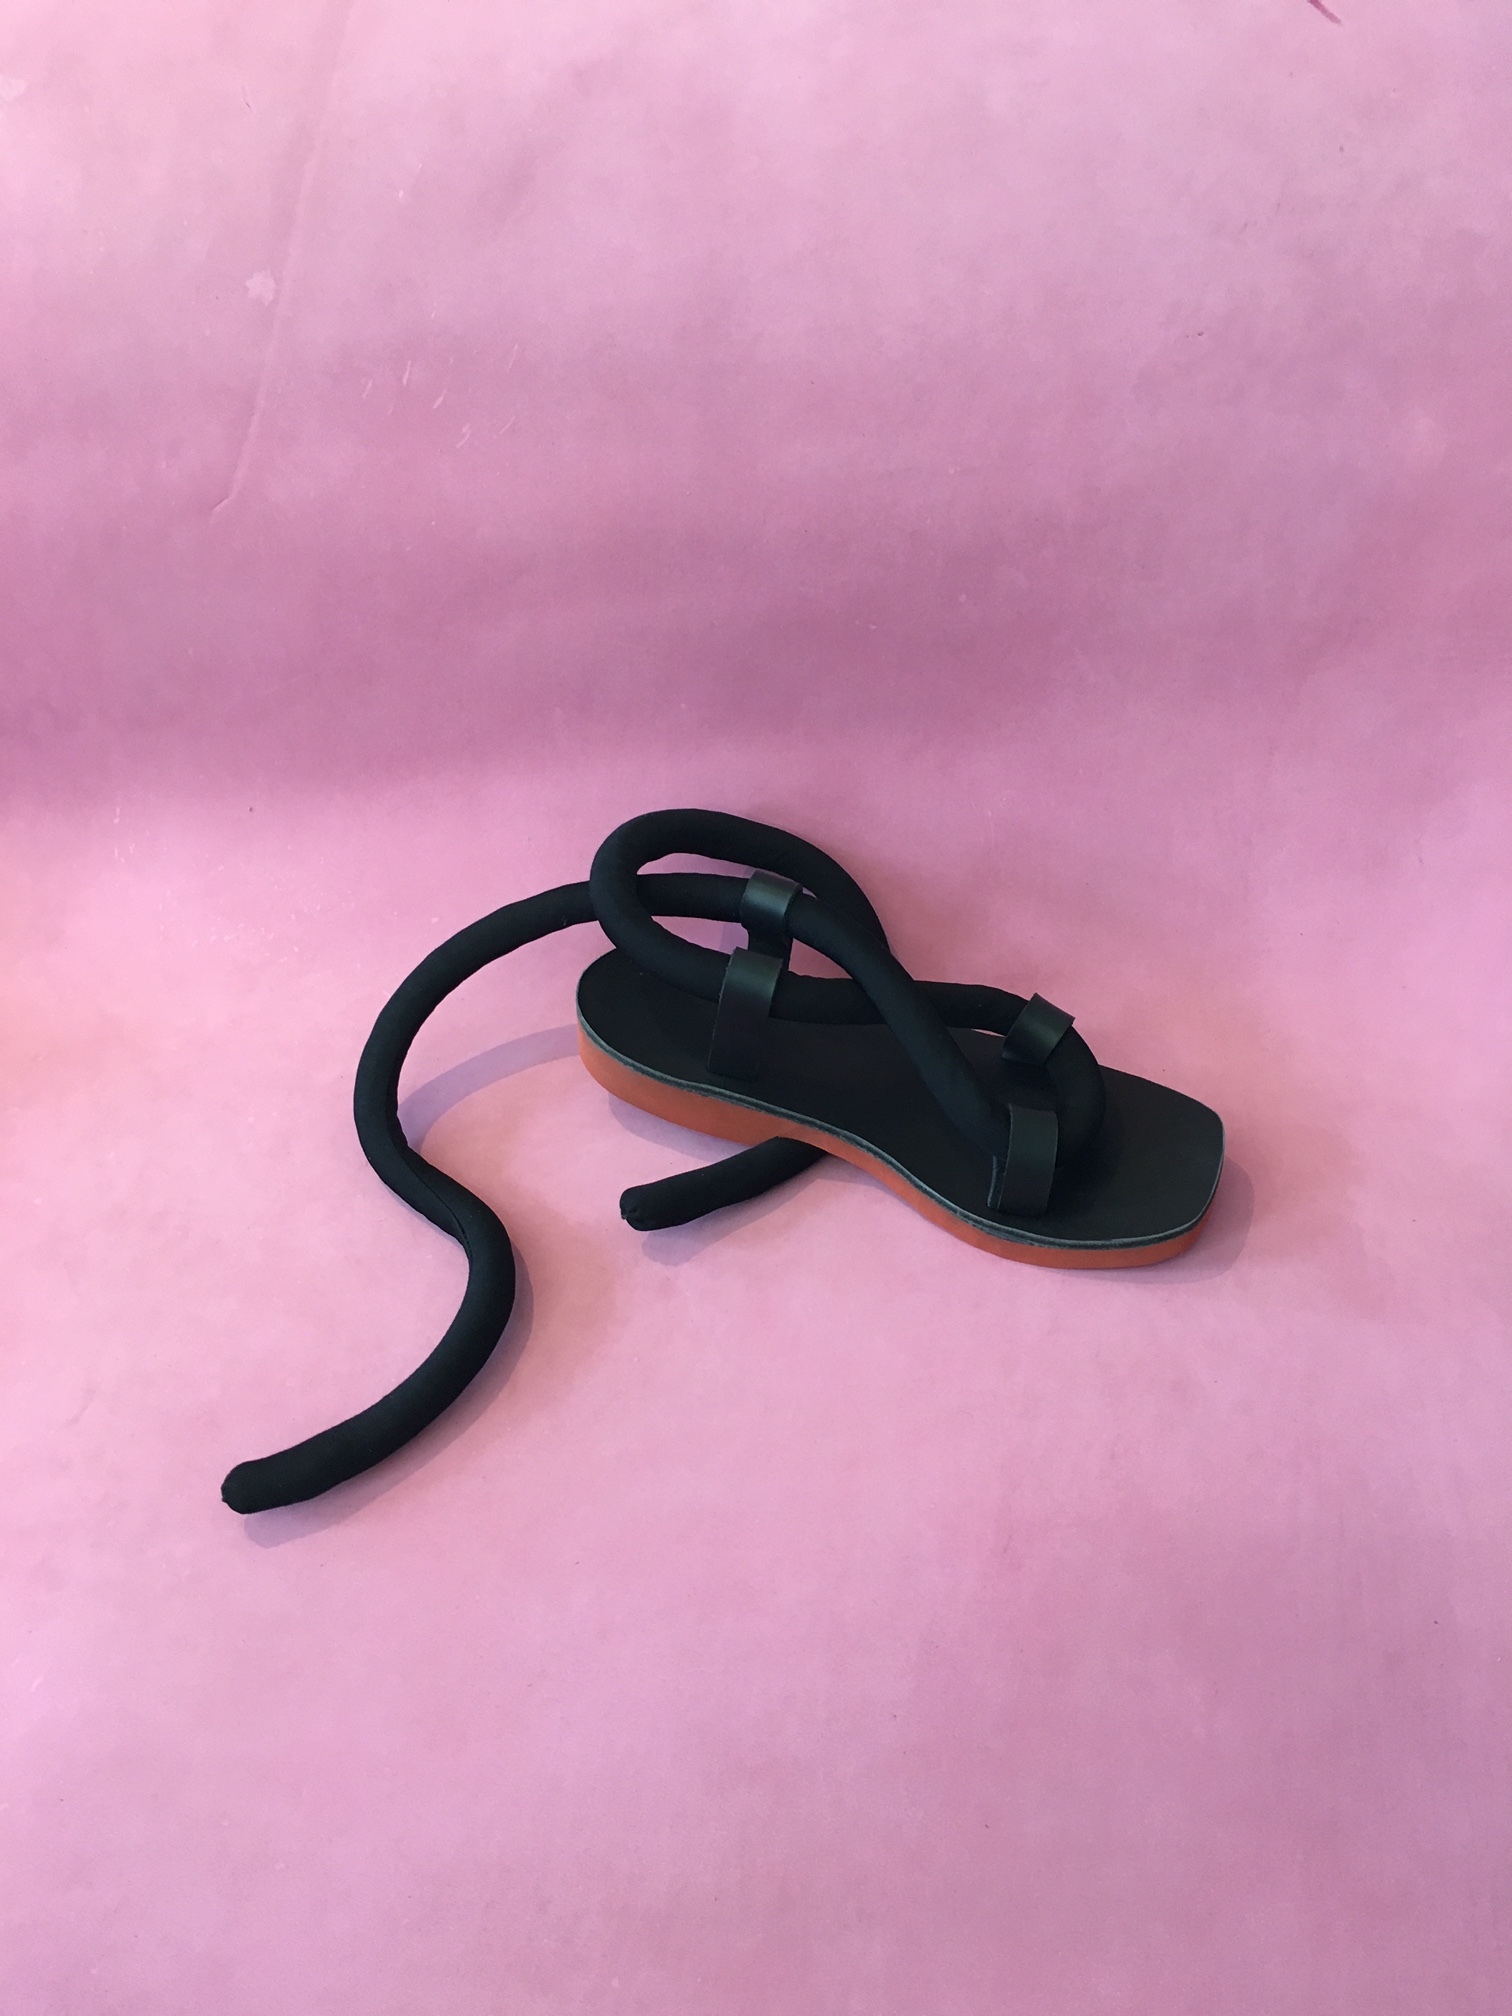 BLACK ROPE SANDALS - SIZE 8 — Rachel Sees Snail Shoes